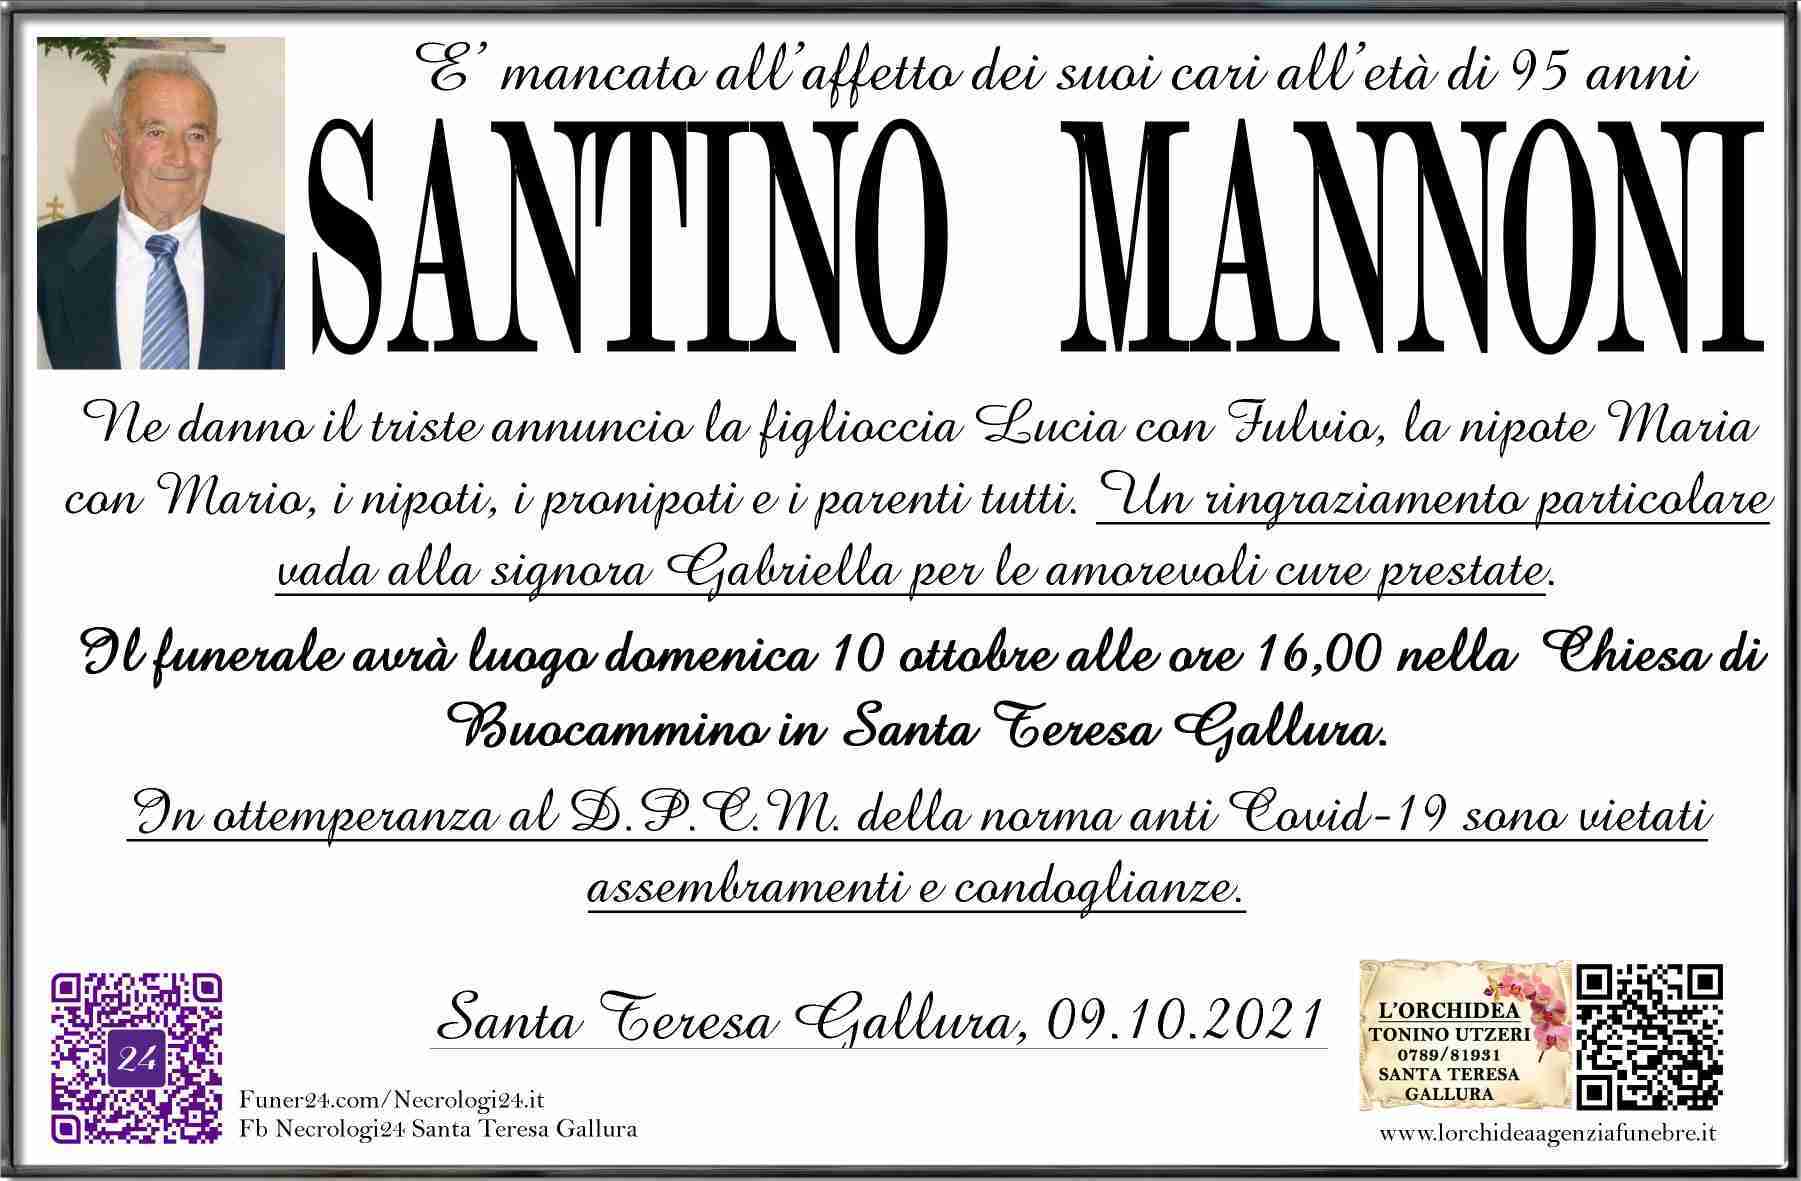 Santino Mannoni